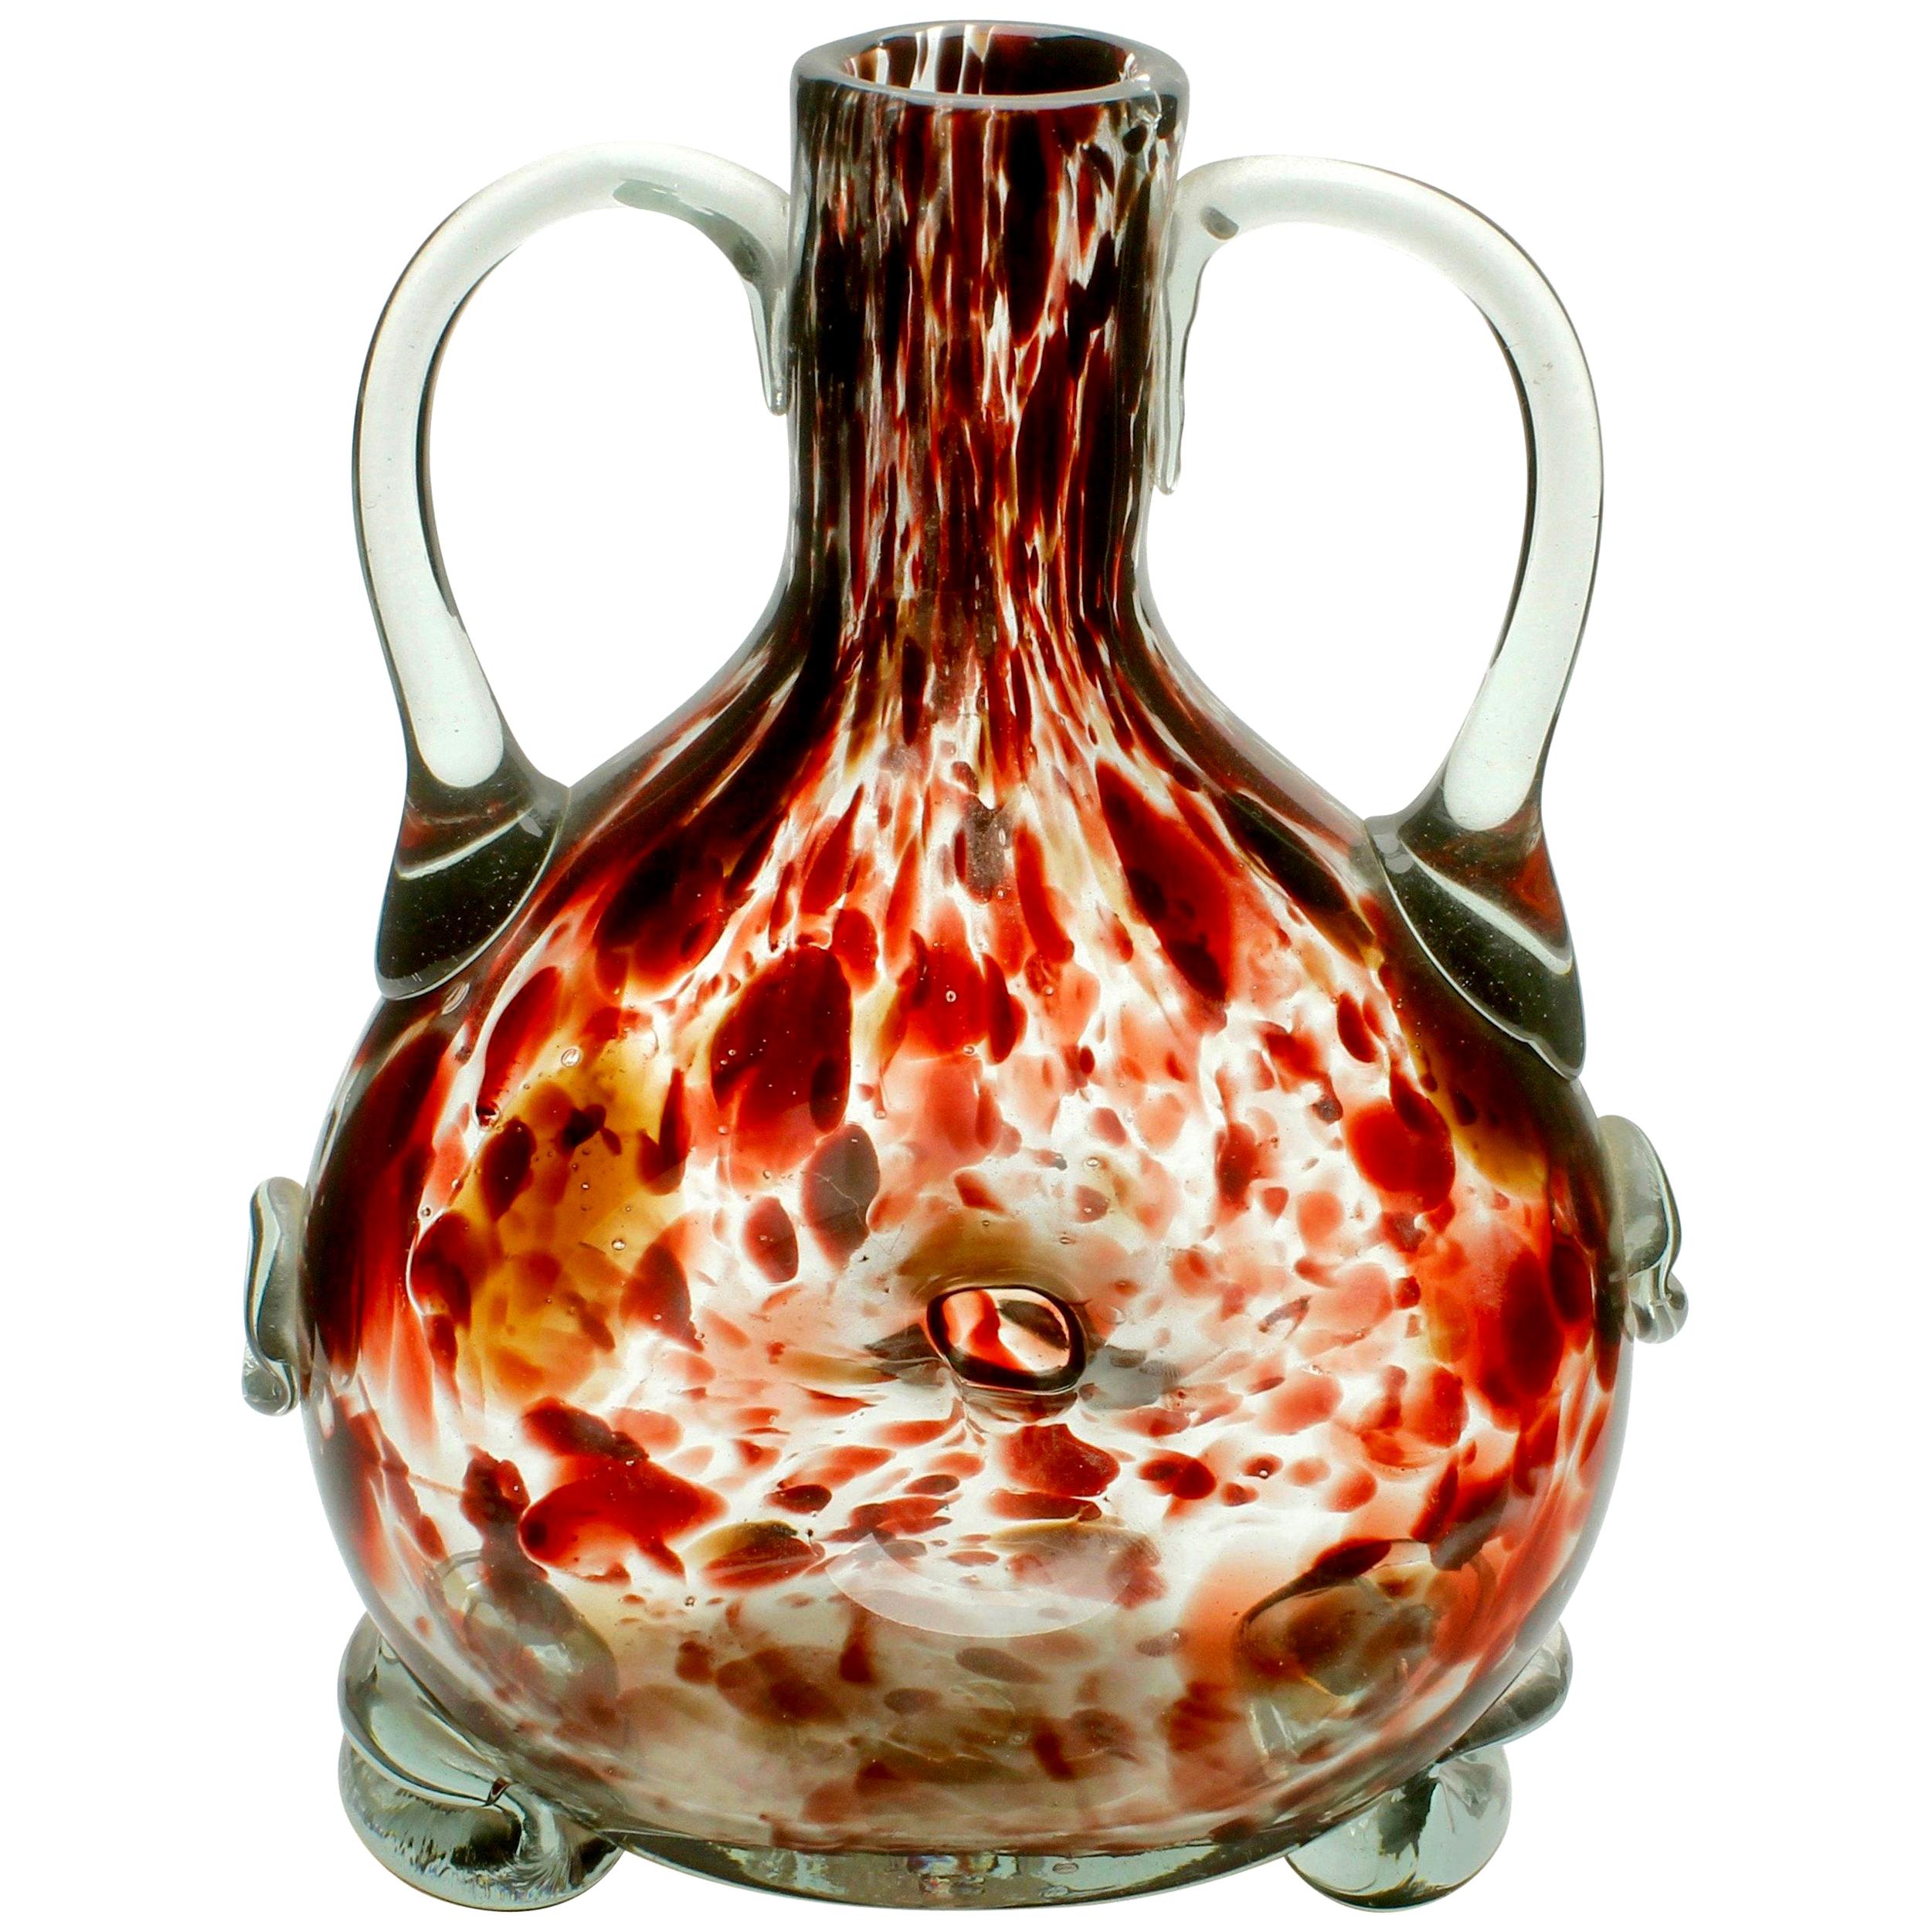 Studio Glass Vase Based on a Mouth-Blown Bottle Shape of Tortoiseshell